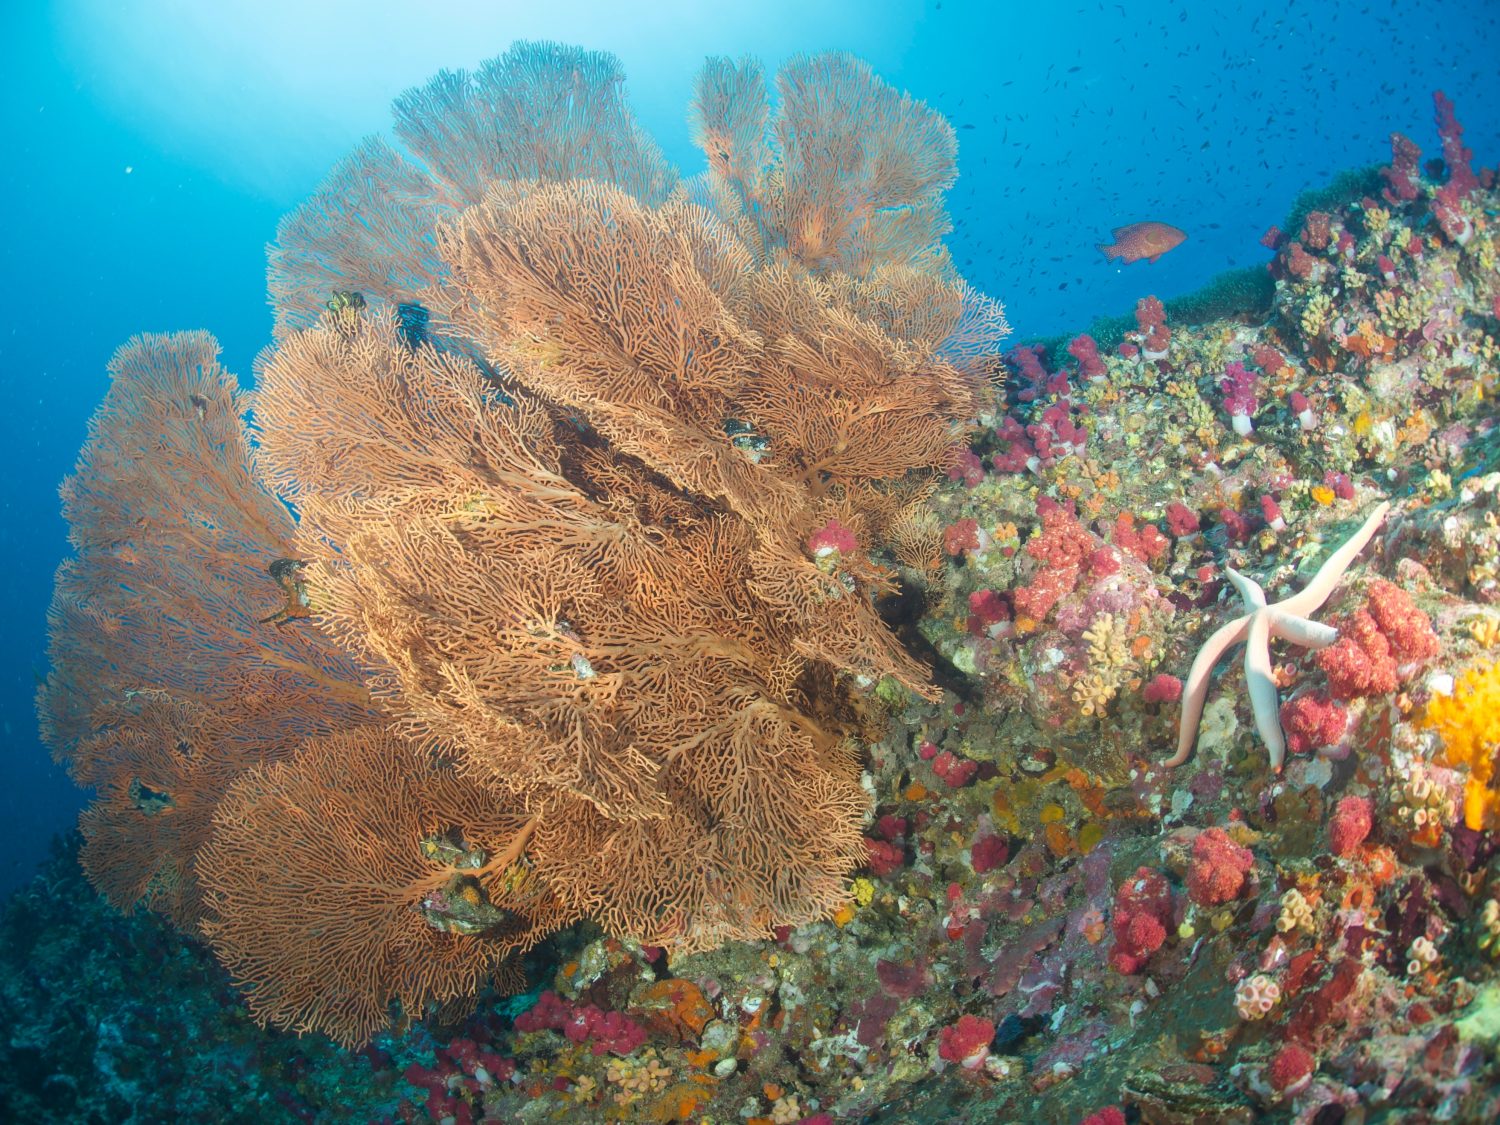 Coralli molli della gorgonia gigante sott'acqua.  La vita della barriera corallina sotto l'oceano indo-pacifico tropicale.    